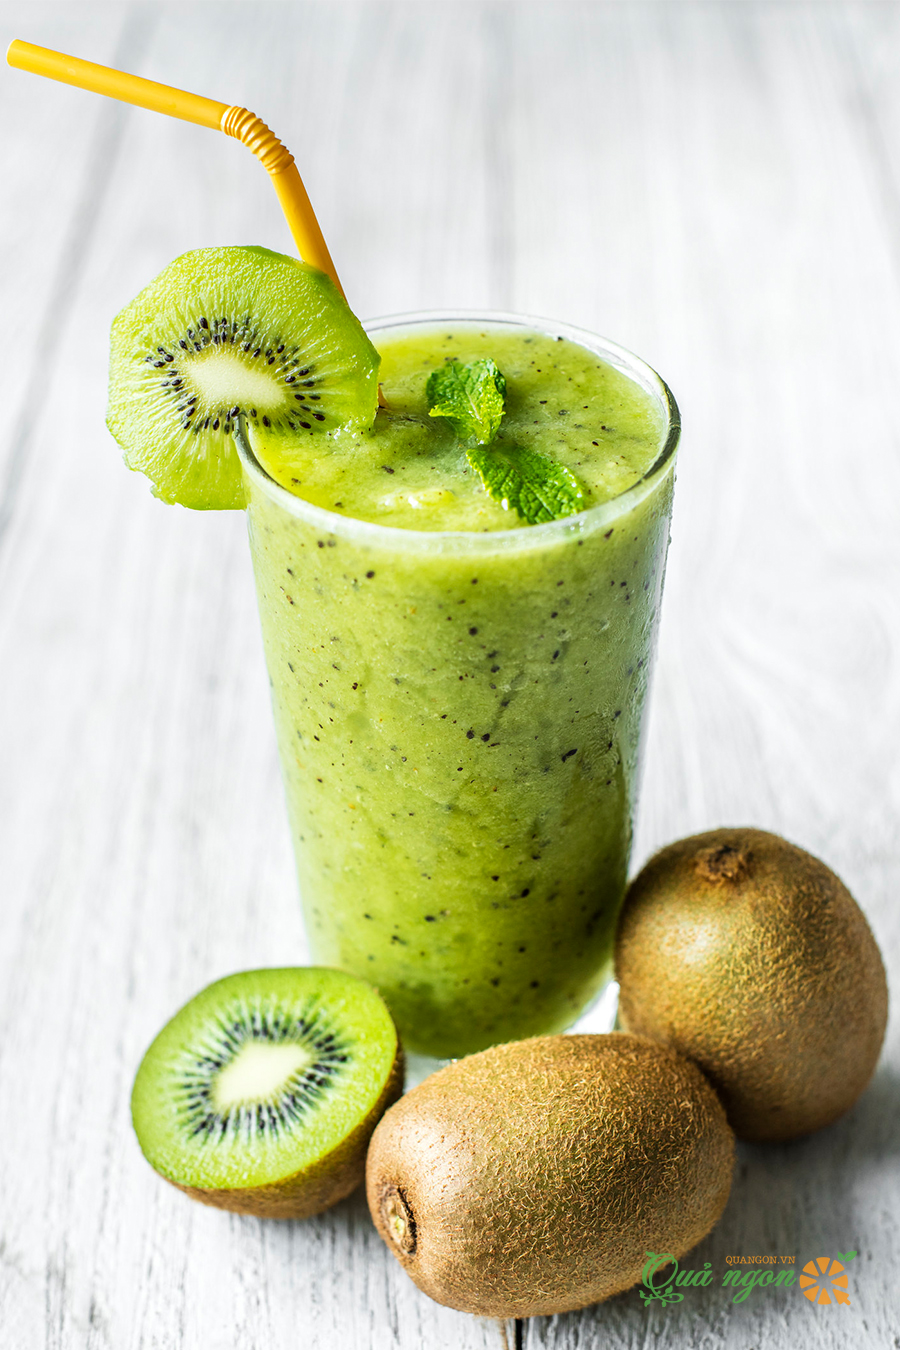 Công thức làm sinh tố táo xanh kiwi